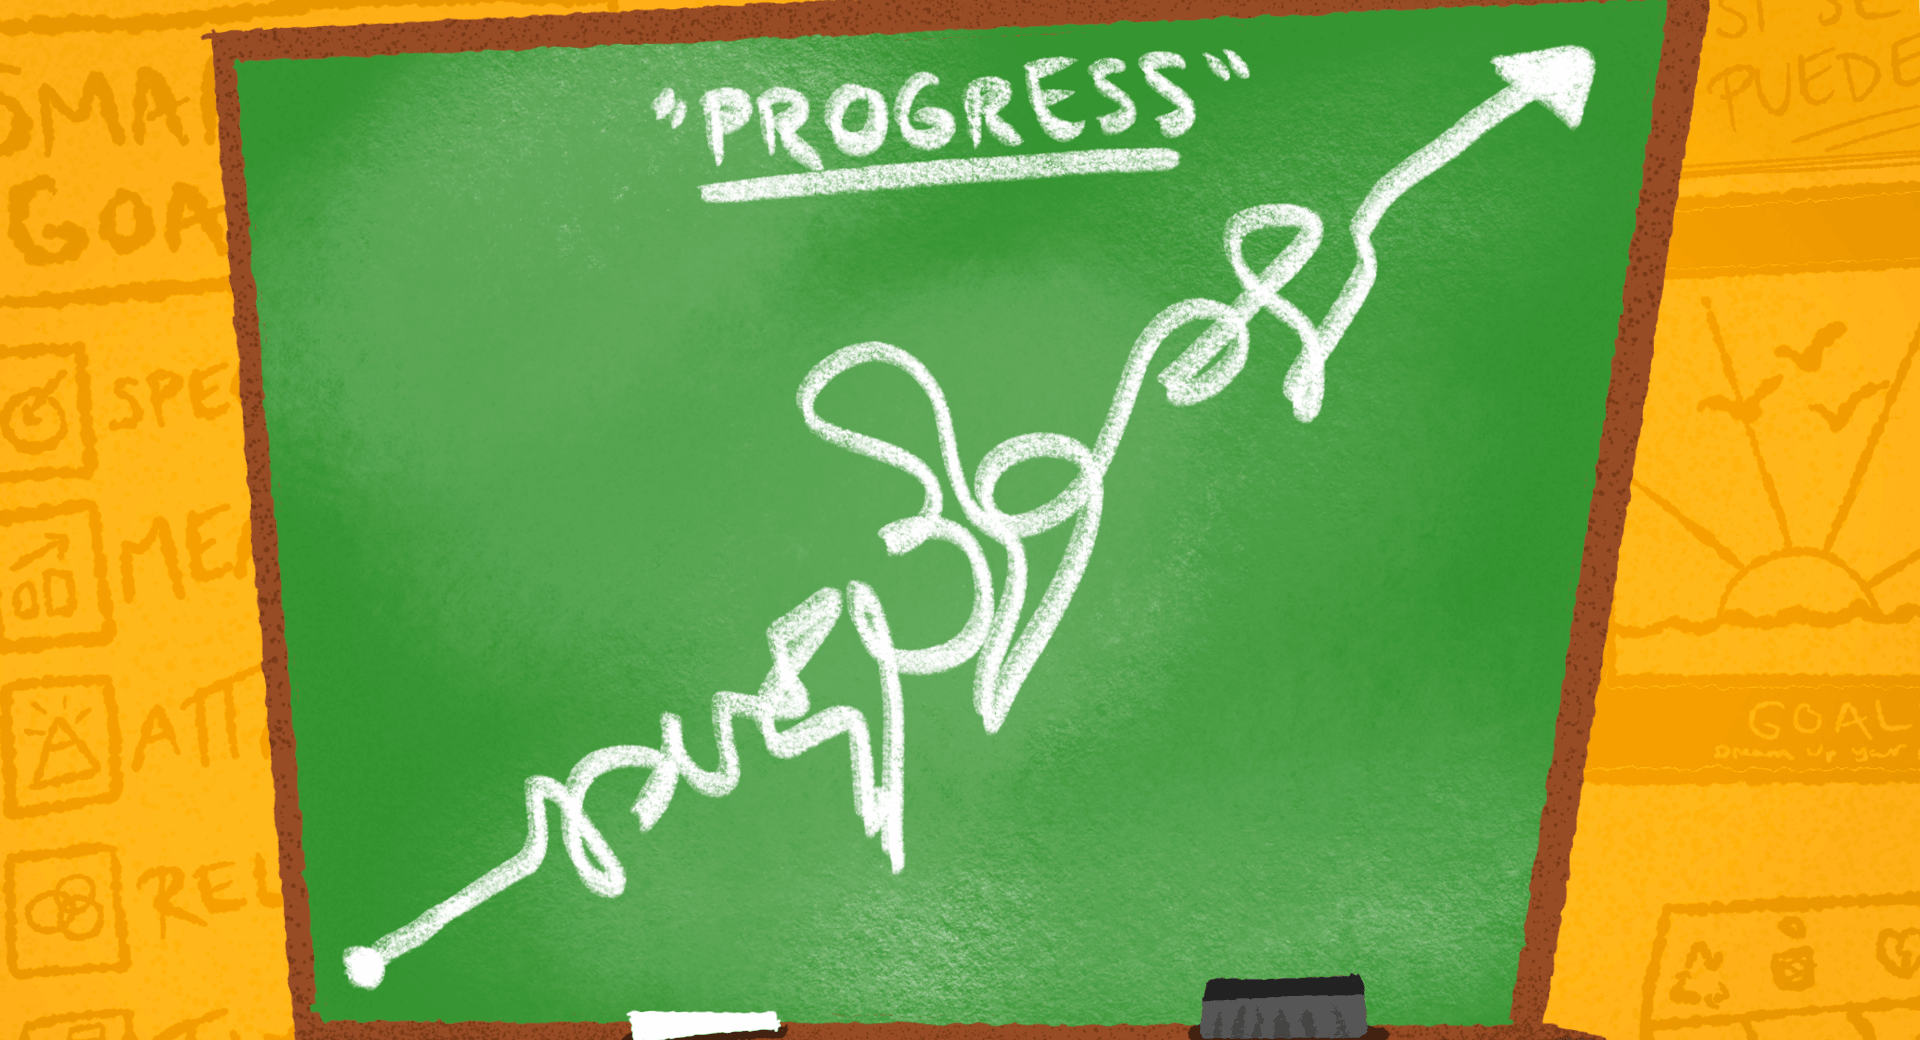 Progress is Not Linear